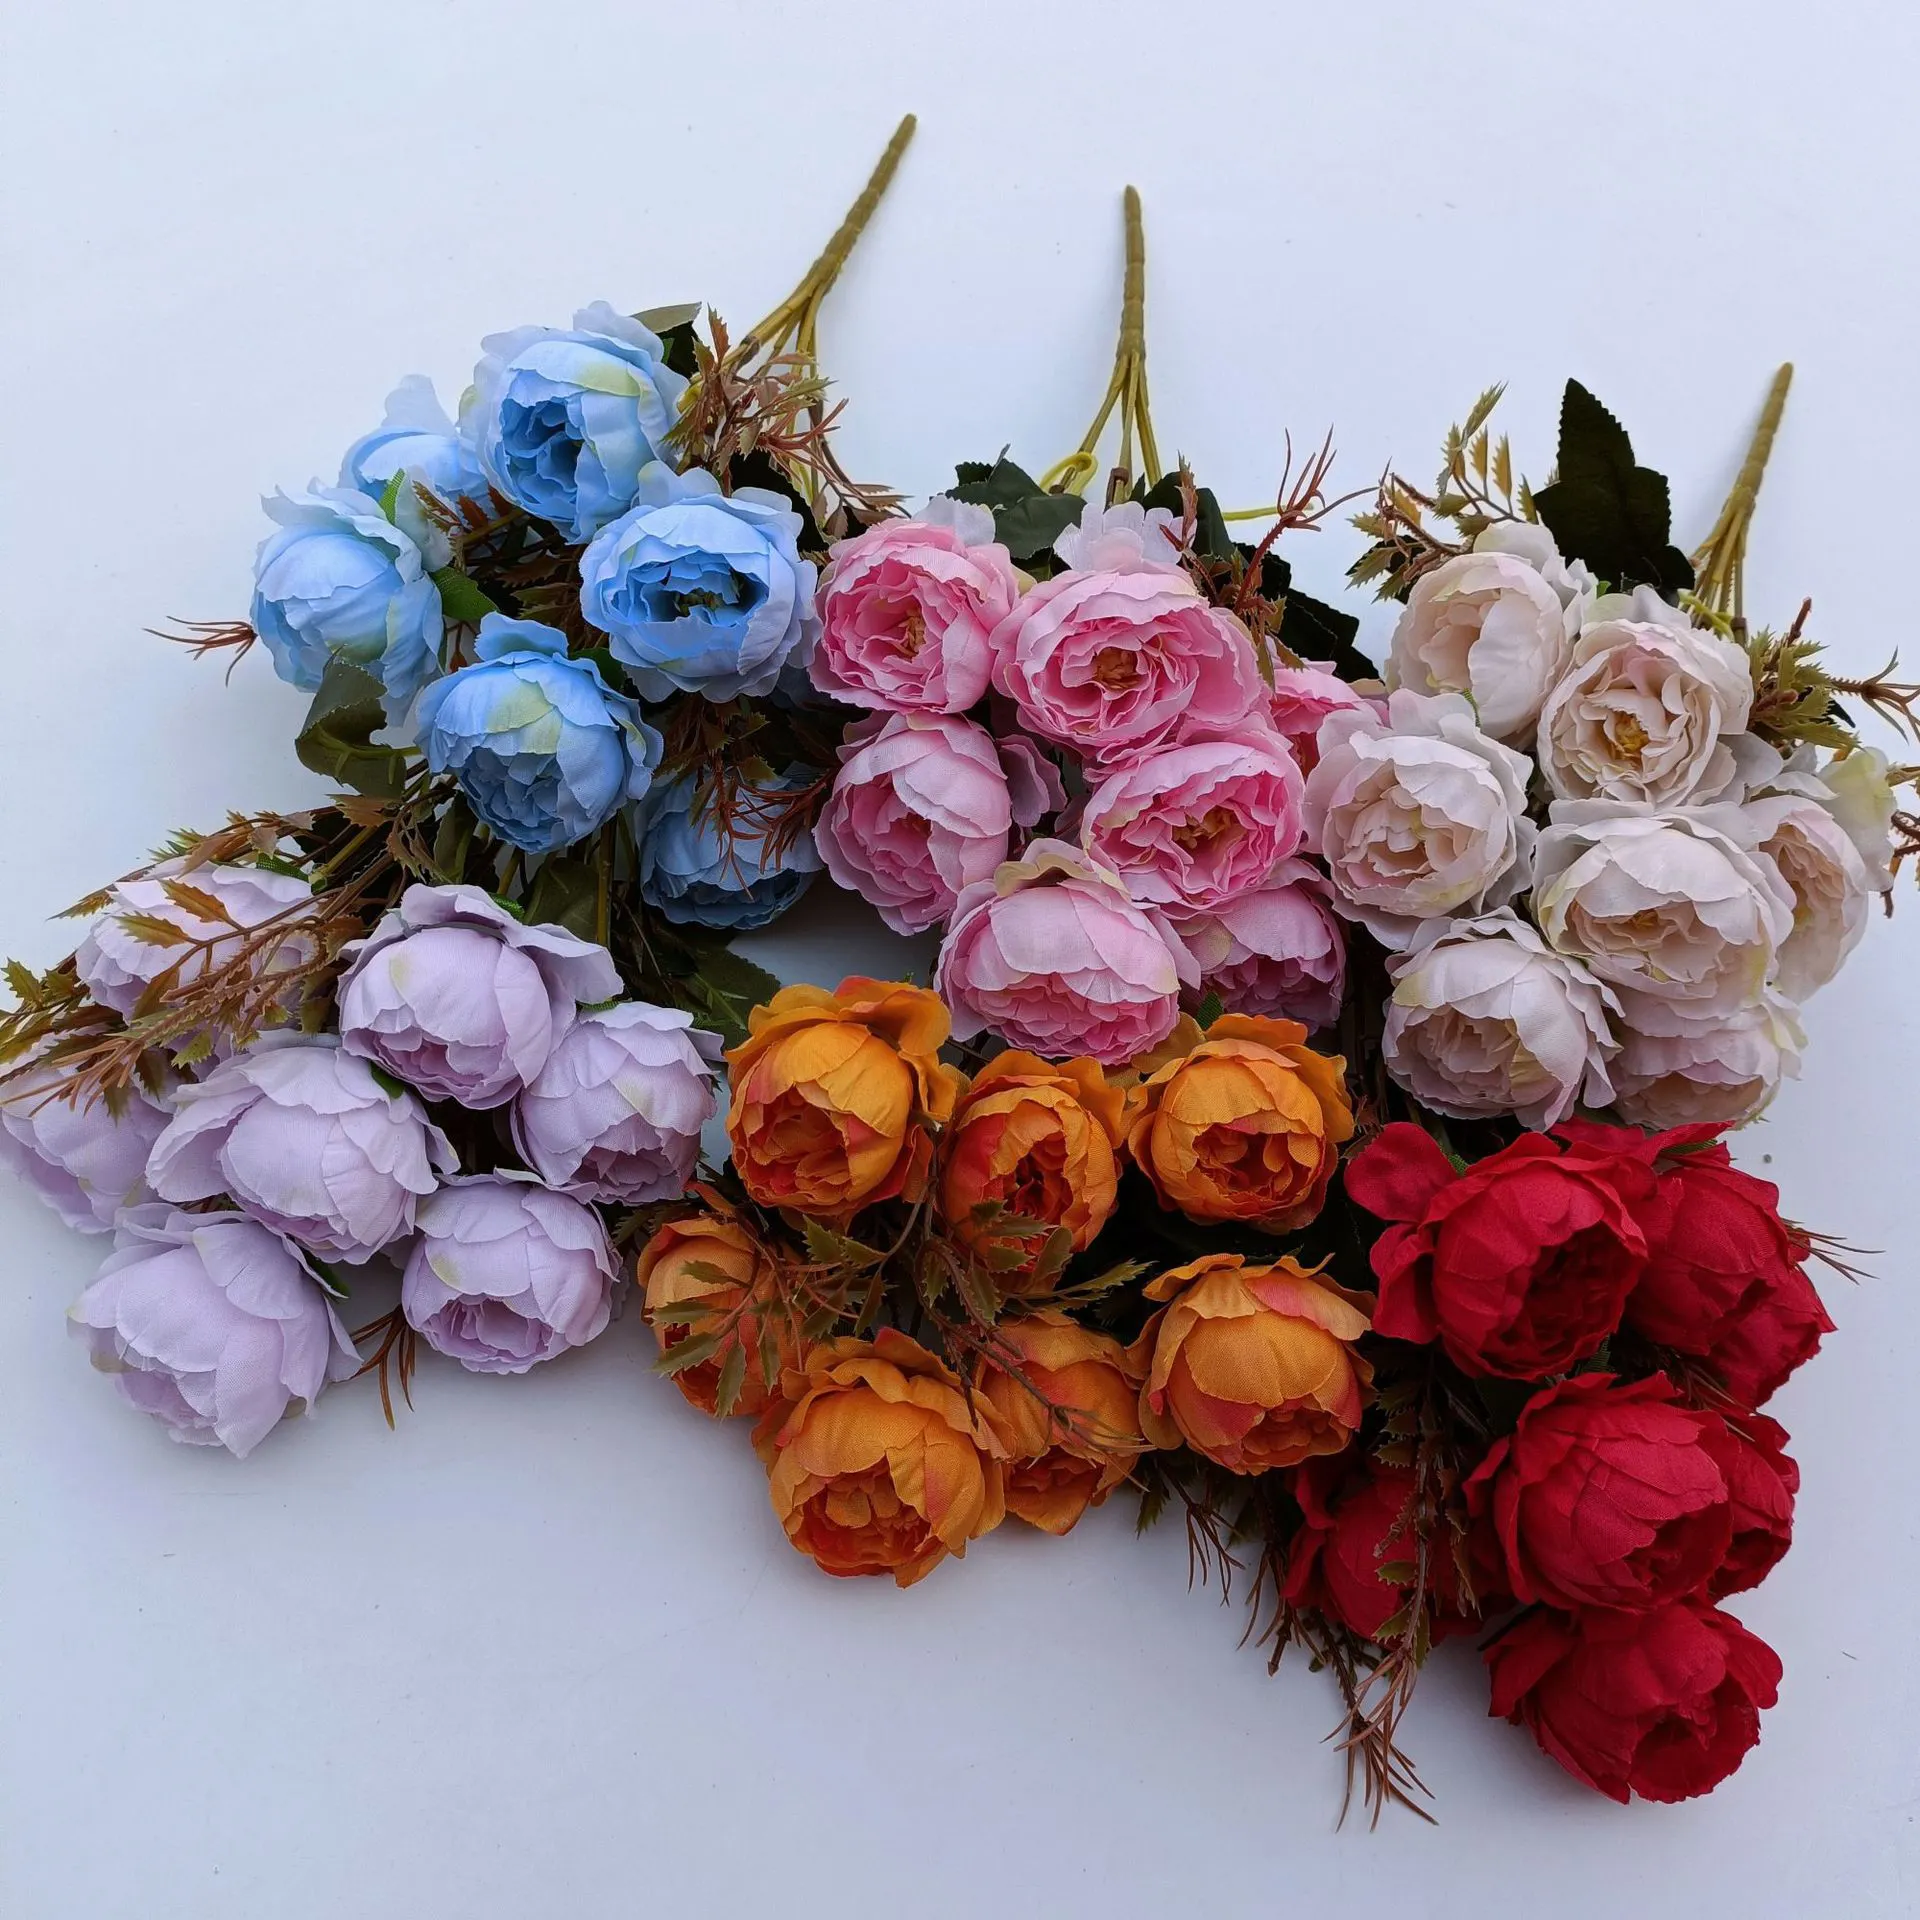 Vente en gros fleurs artificielles en soie buissons de pivoines fleurs artificielles bouquet de pivoines pour mariage